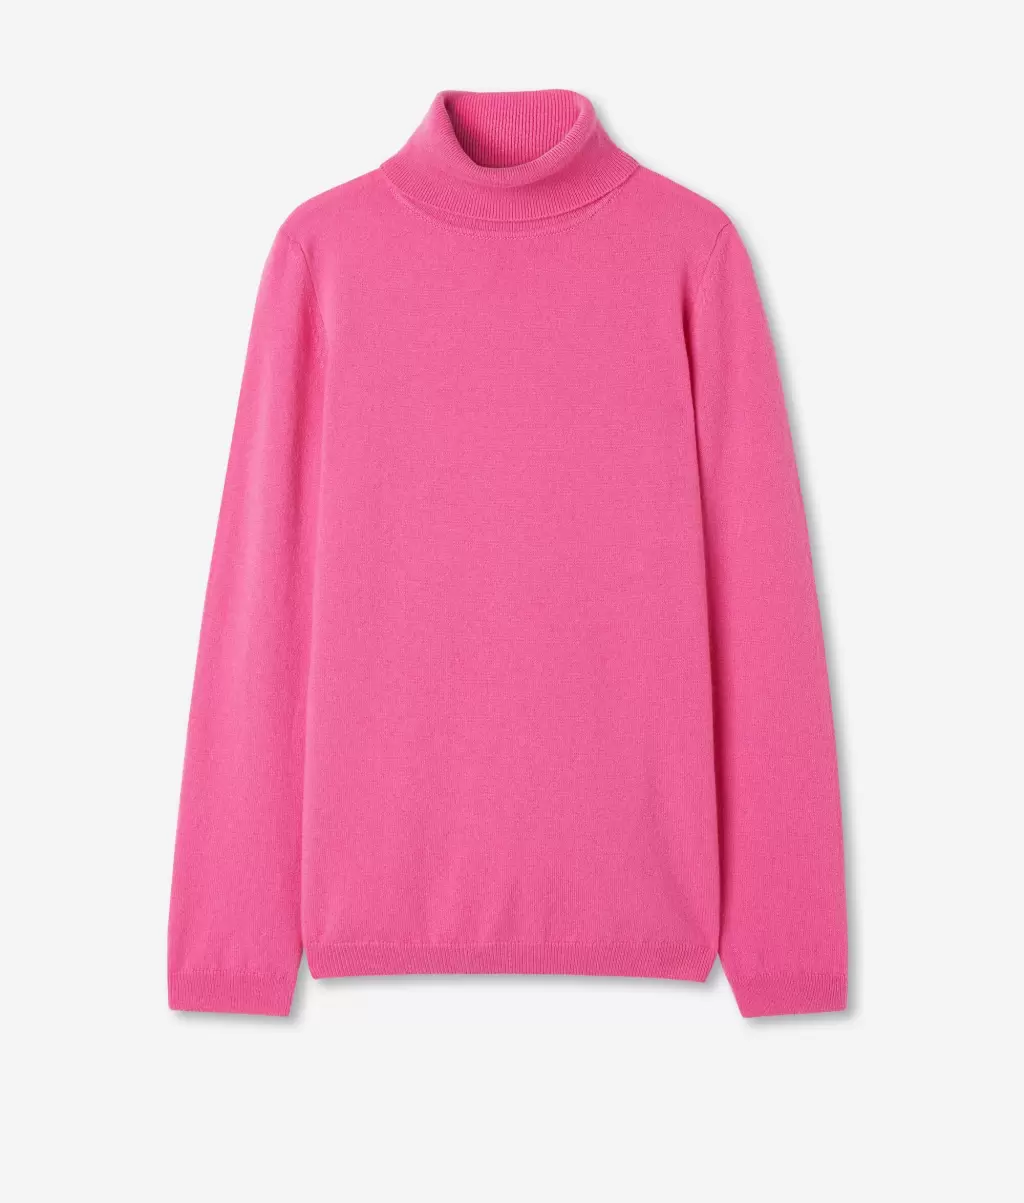 Kobieta Sweter Z Golfem Z Kaszmiru Ultrasoft Falconeri Golfy Pink - 4